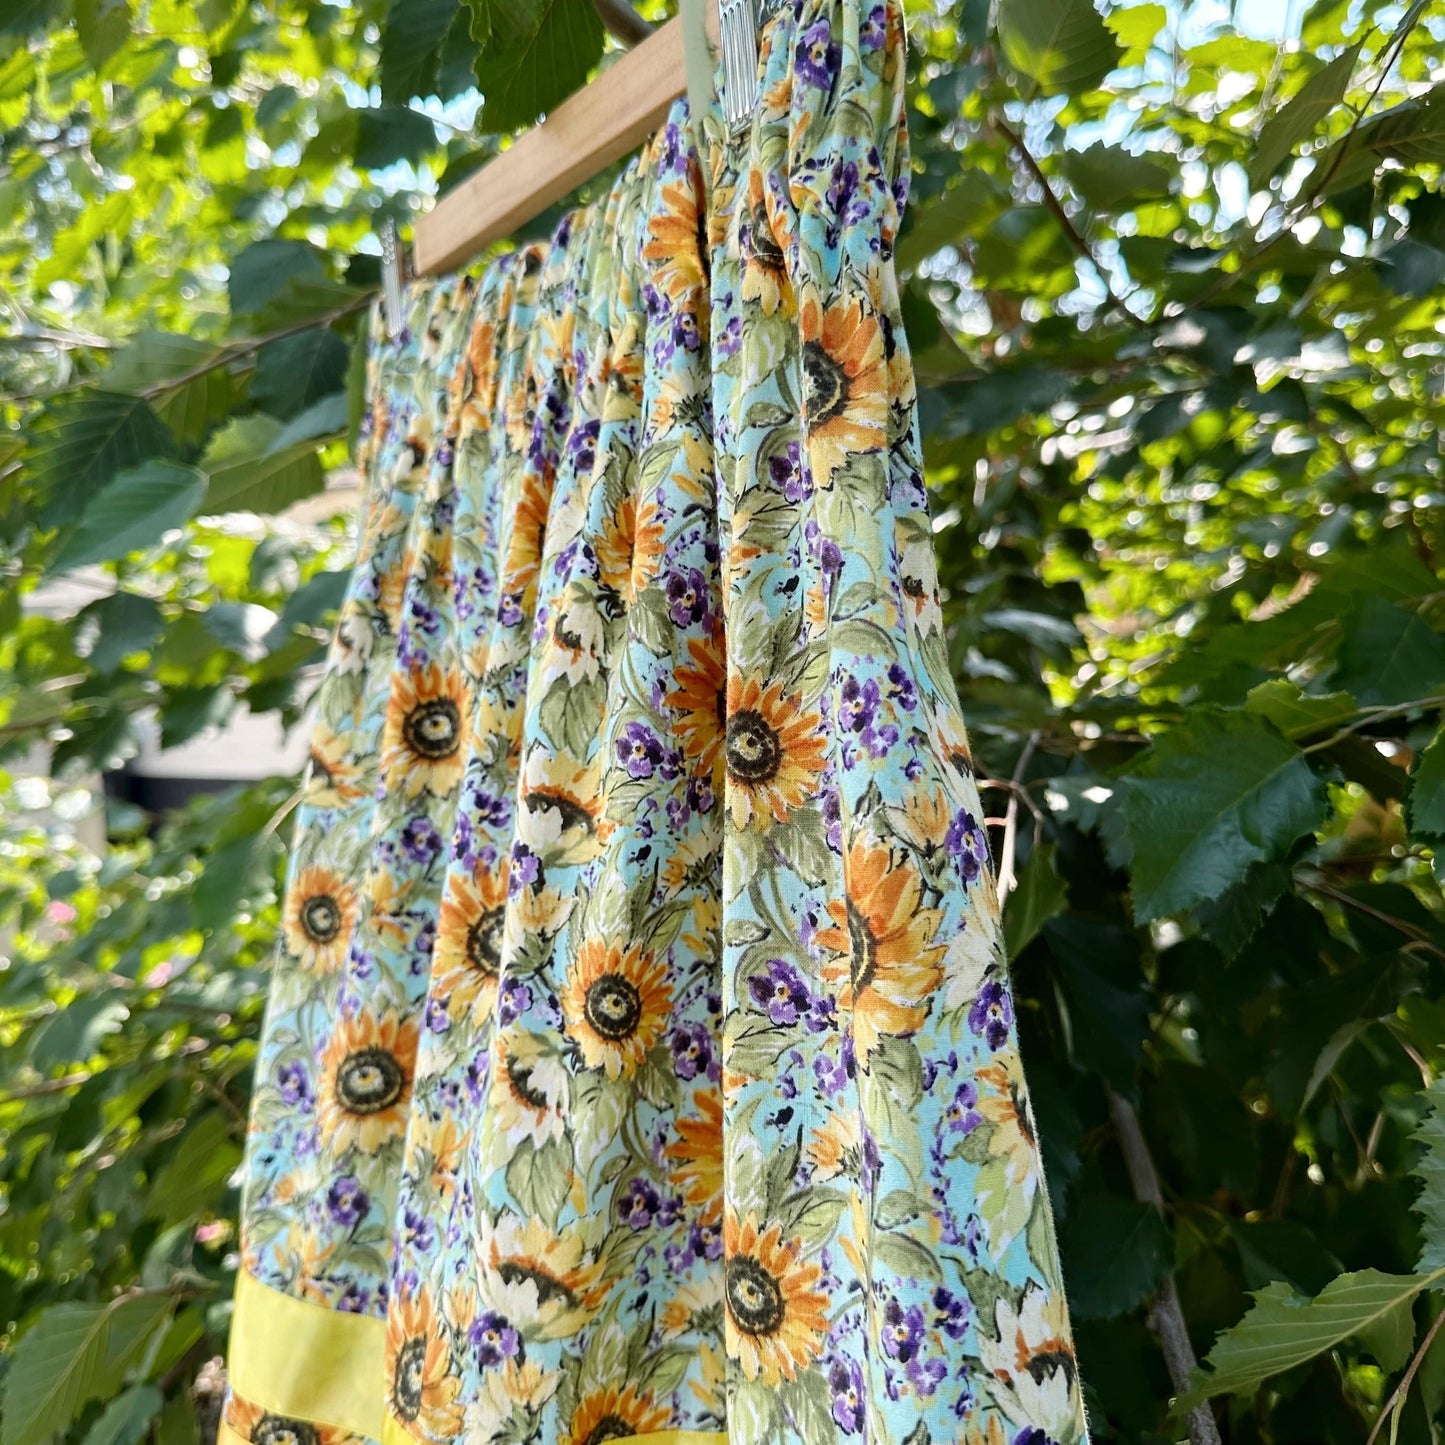 Lillie Nell Sunflower Tea Length Ribbon Skirt + Earrings Set Skirts in